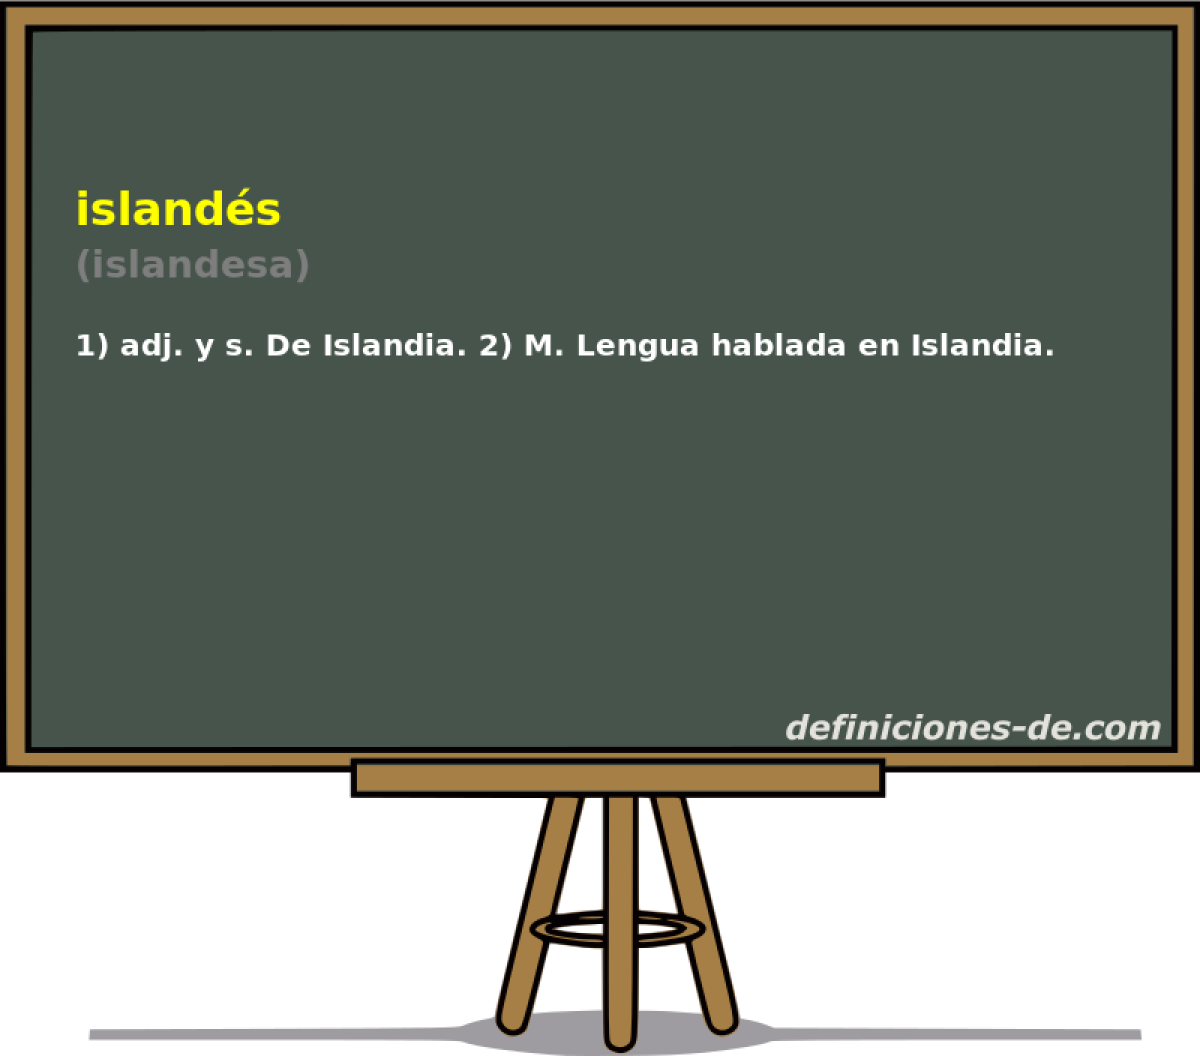 islands (islandesa)